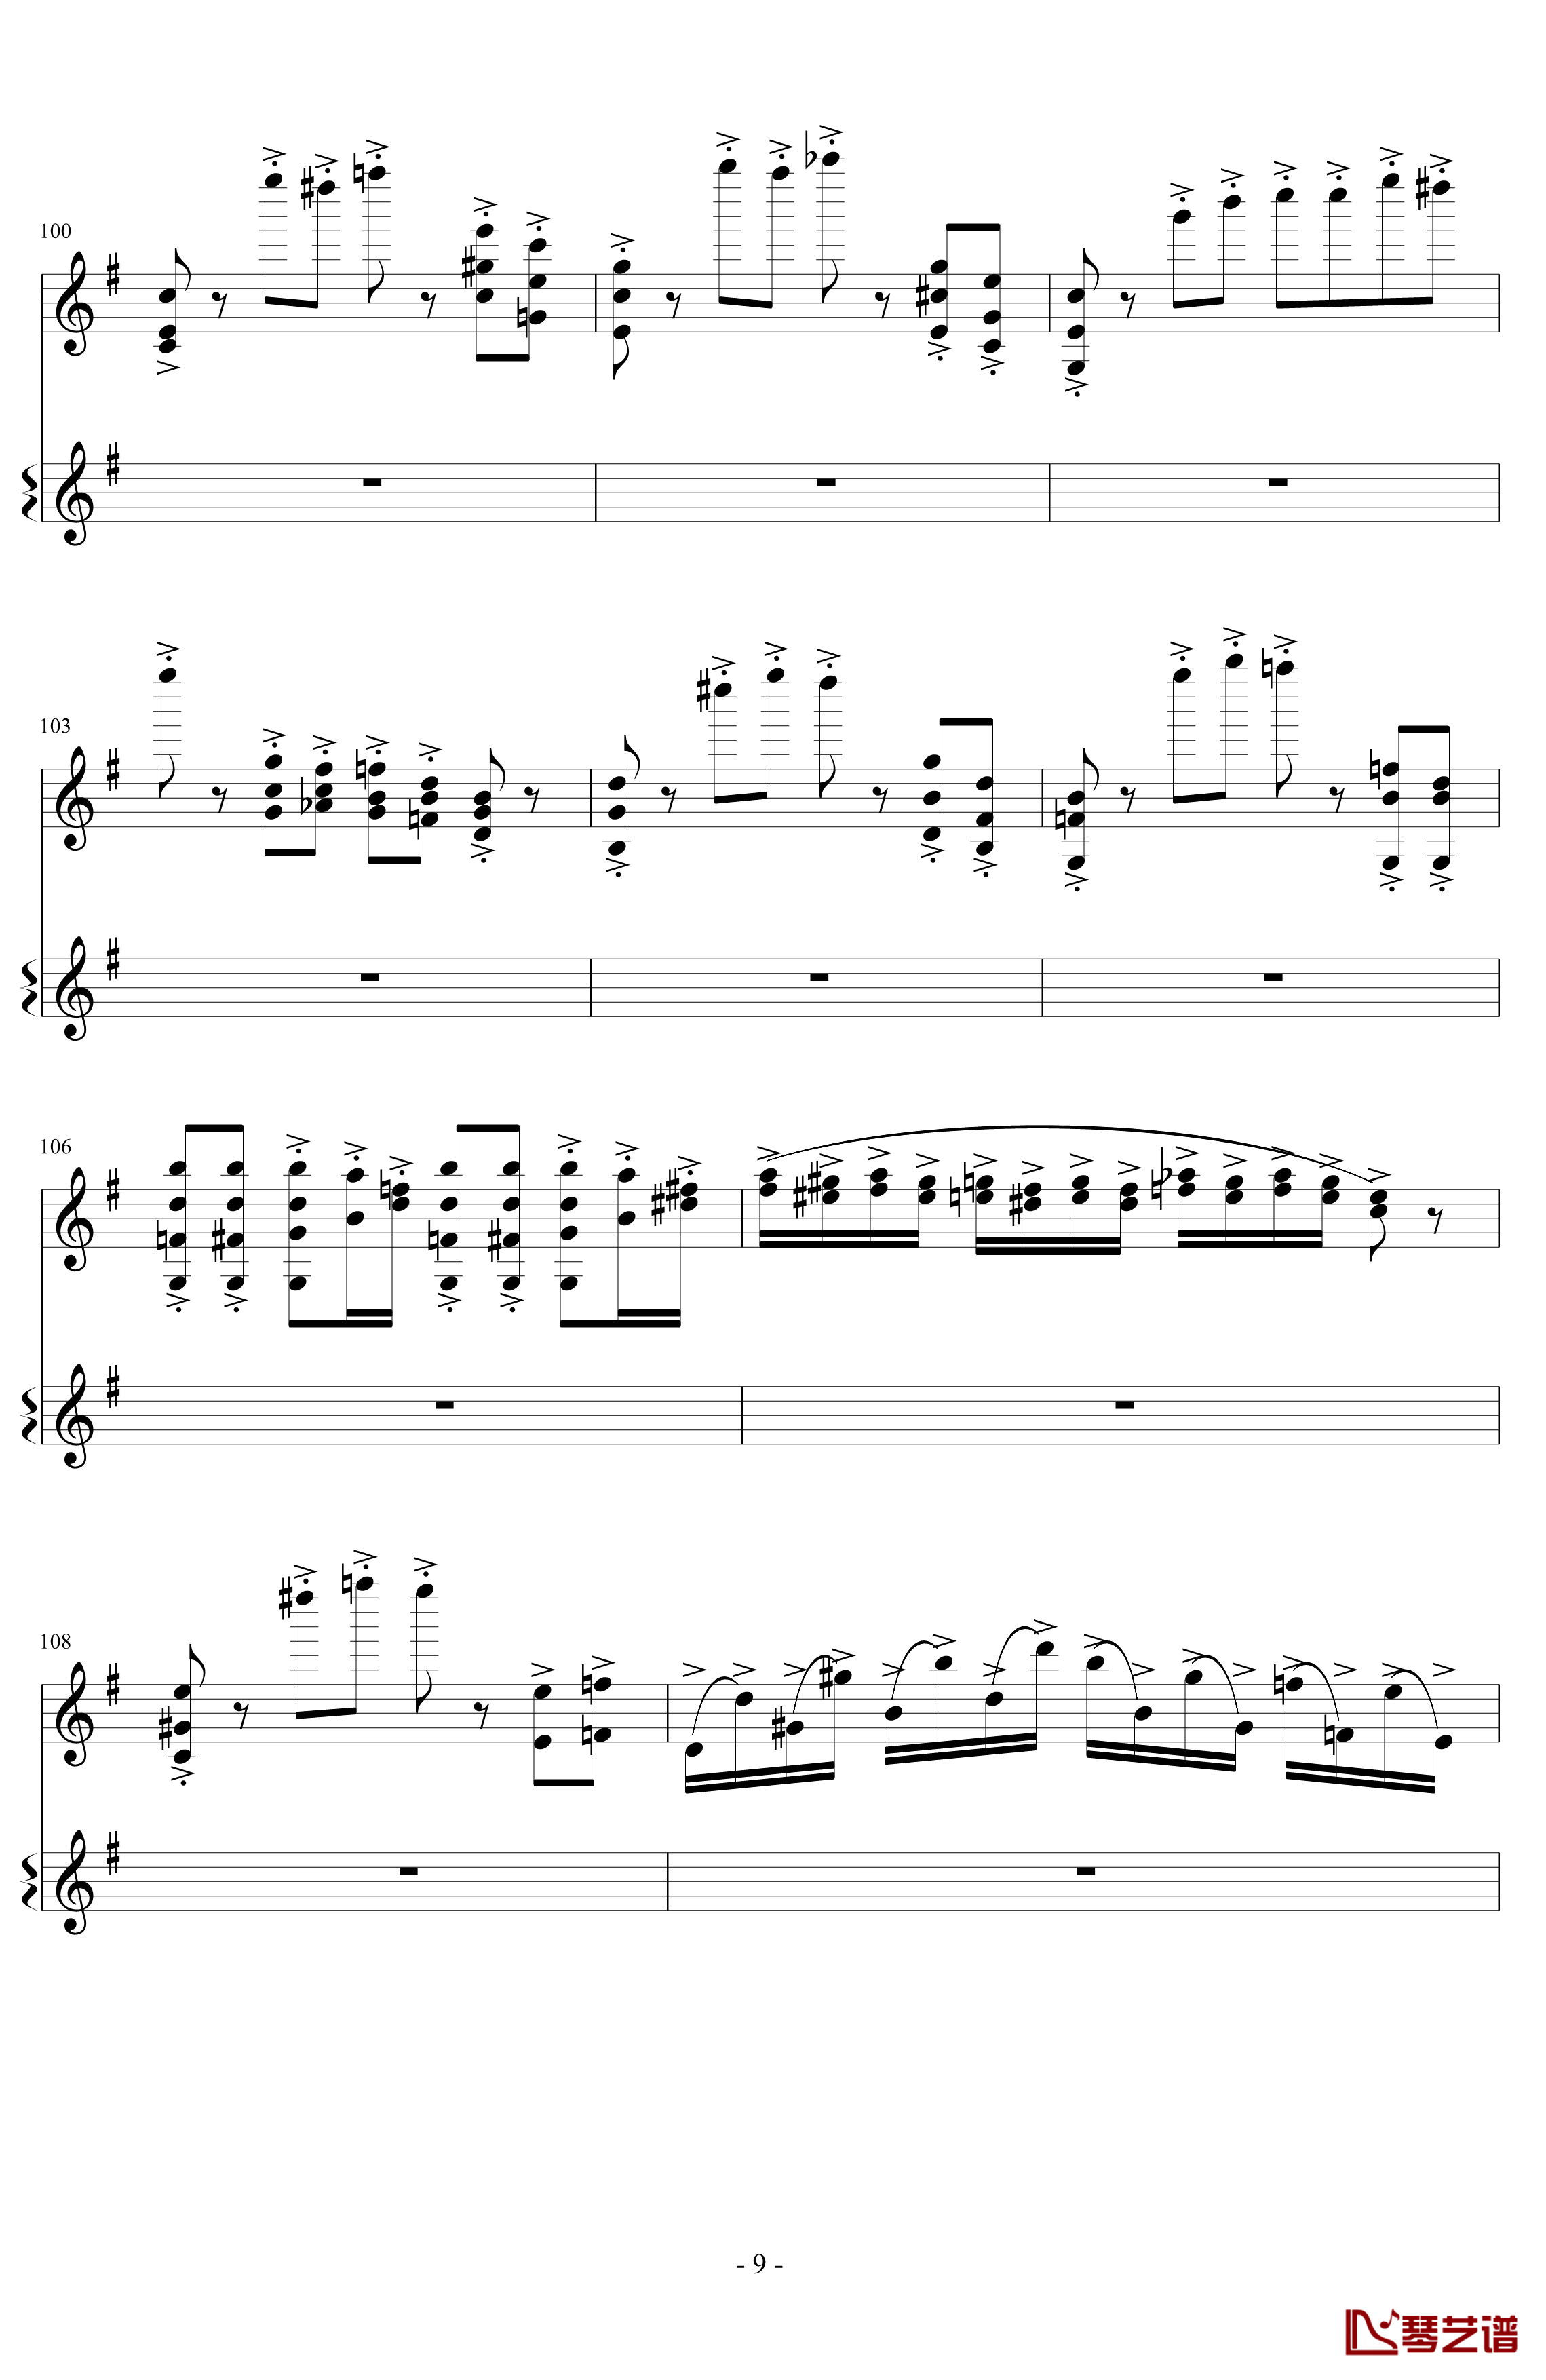 意大利国歌变奏曲钢琴谱-DXF9